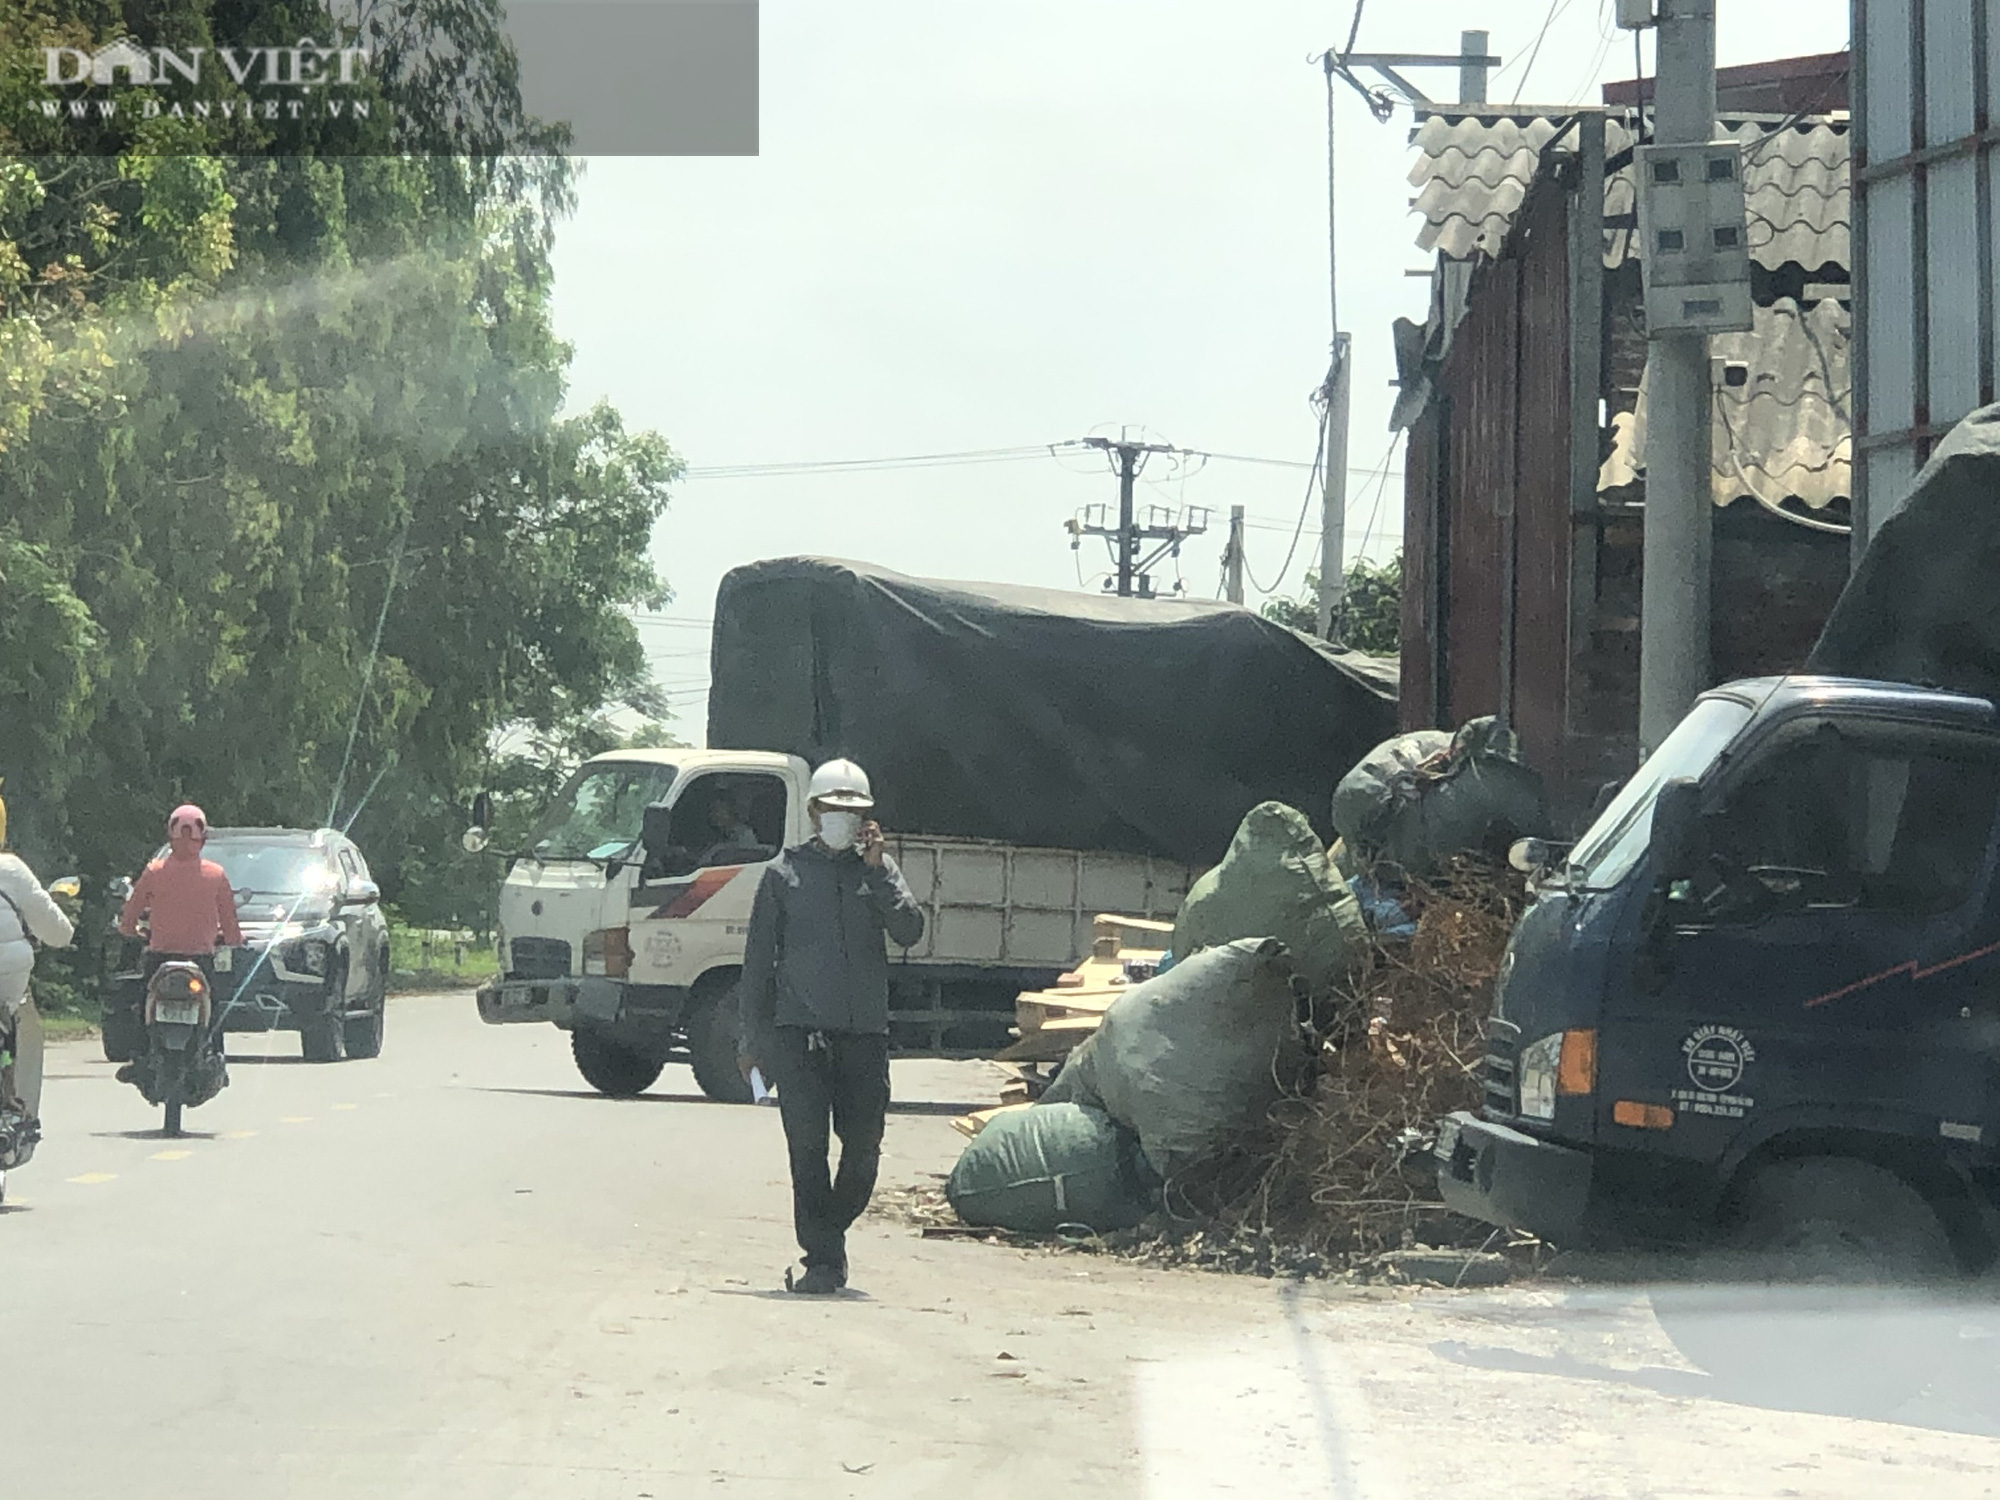 Ô nhiễm ở Phong Khê: Bị yêu cầu đóng cửa, Công ty Viphaco vẫn cố tình sản xuất, dọa đập máy ảnh của phóng viên - Ảnh 3.